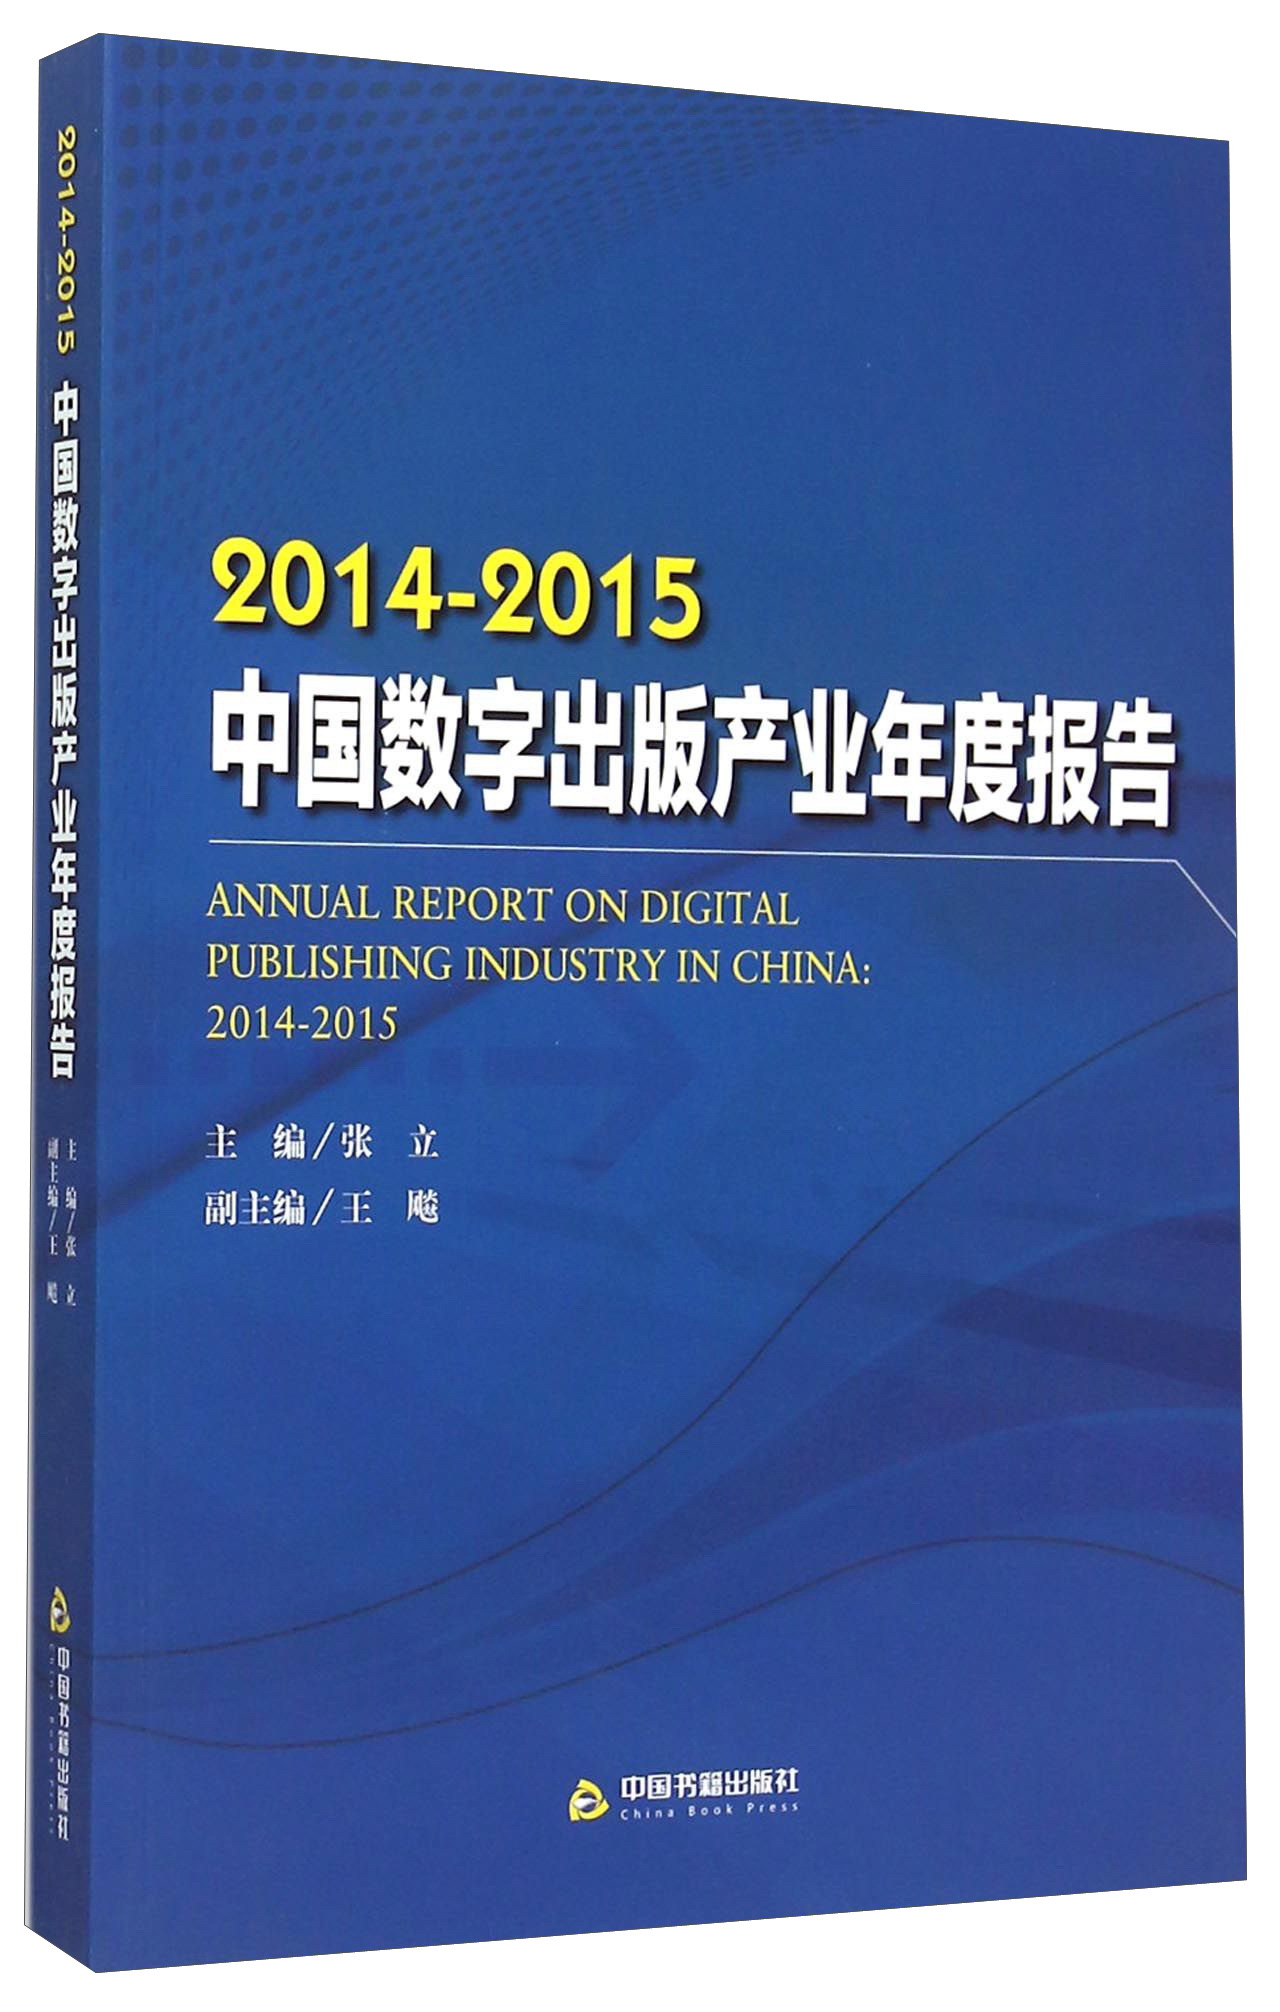 2014-2015中国数字出版产业年度报告 kindle格式下载